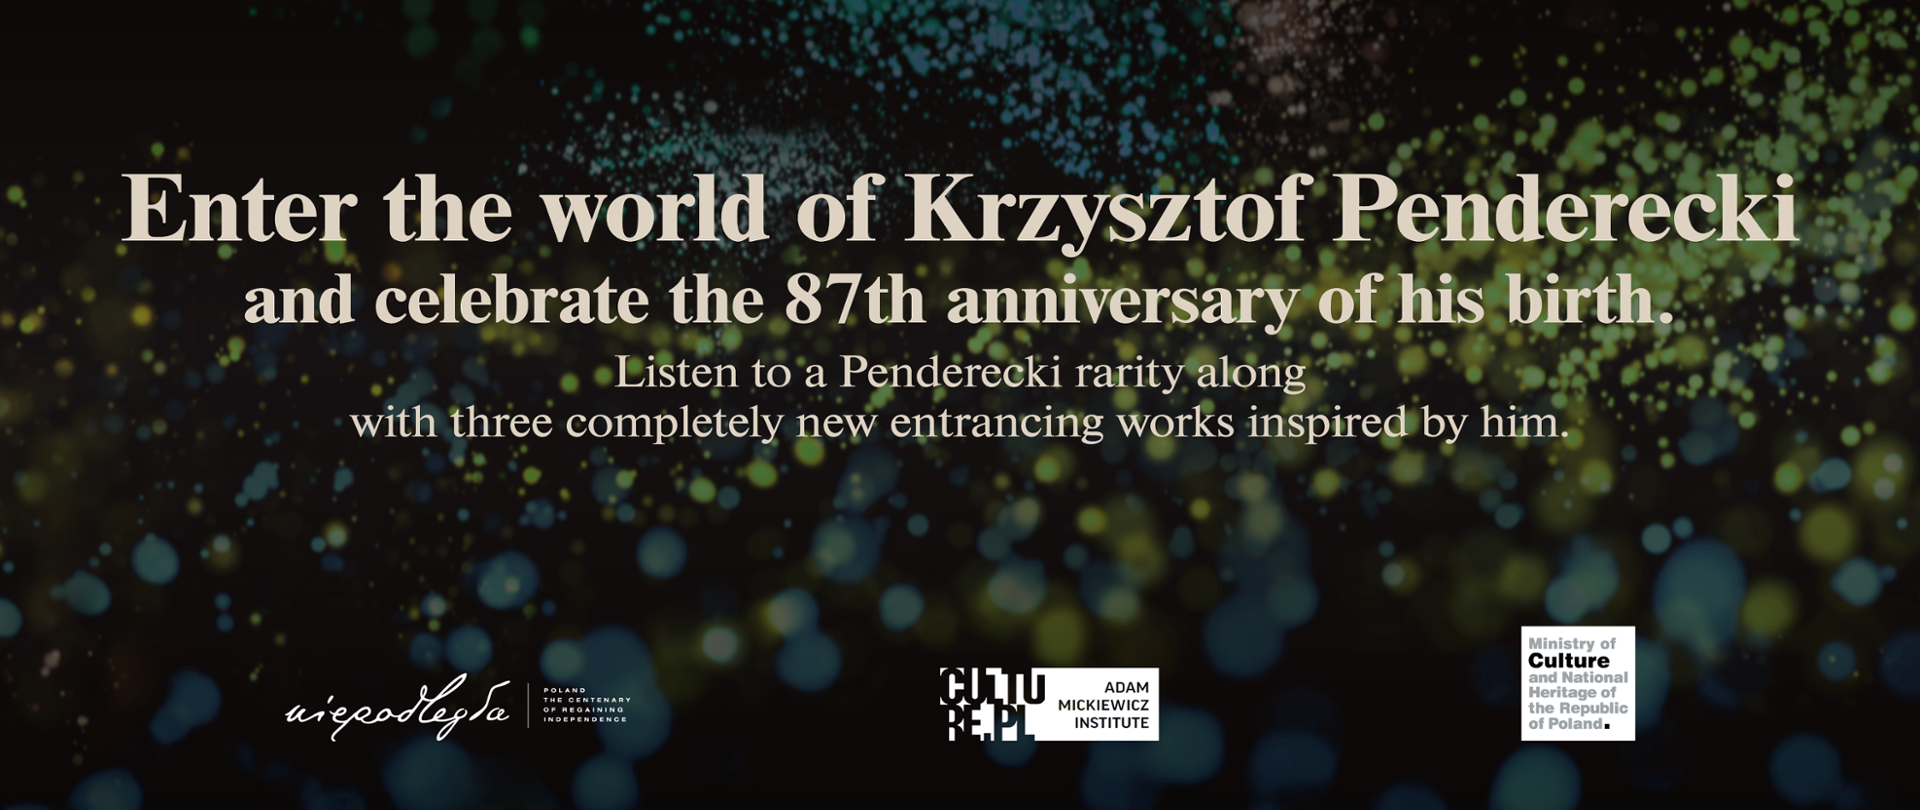 Instytut Adama Mickiewicza wydał płytę winylową poświęconą Krzysztofowi Pendereckiemu